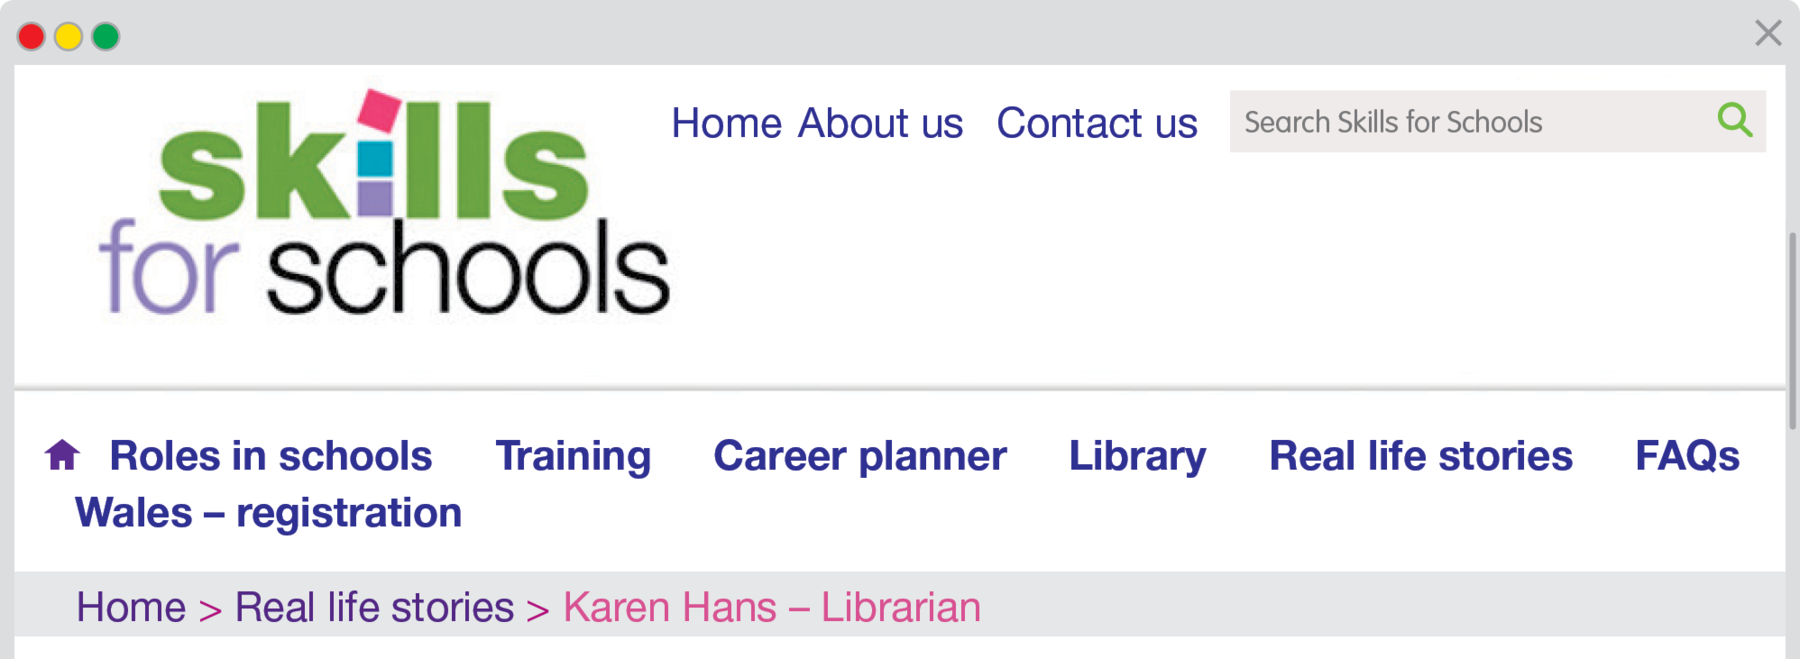 Reprodução de página da internet.
Os links para as outras áreas da página são: ROLES IN SCHOOL, TRAINING, CAREER PLANNER, LIBRARY, REAL LIFE STORIES, FAQS, WALES - REGISTRATION. Abaixo há o caminho para o texto de Karen Hans: HOME > REAL LIFE STORIES > KAREN HANS - LIBRARIAN.